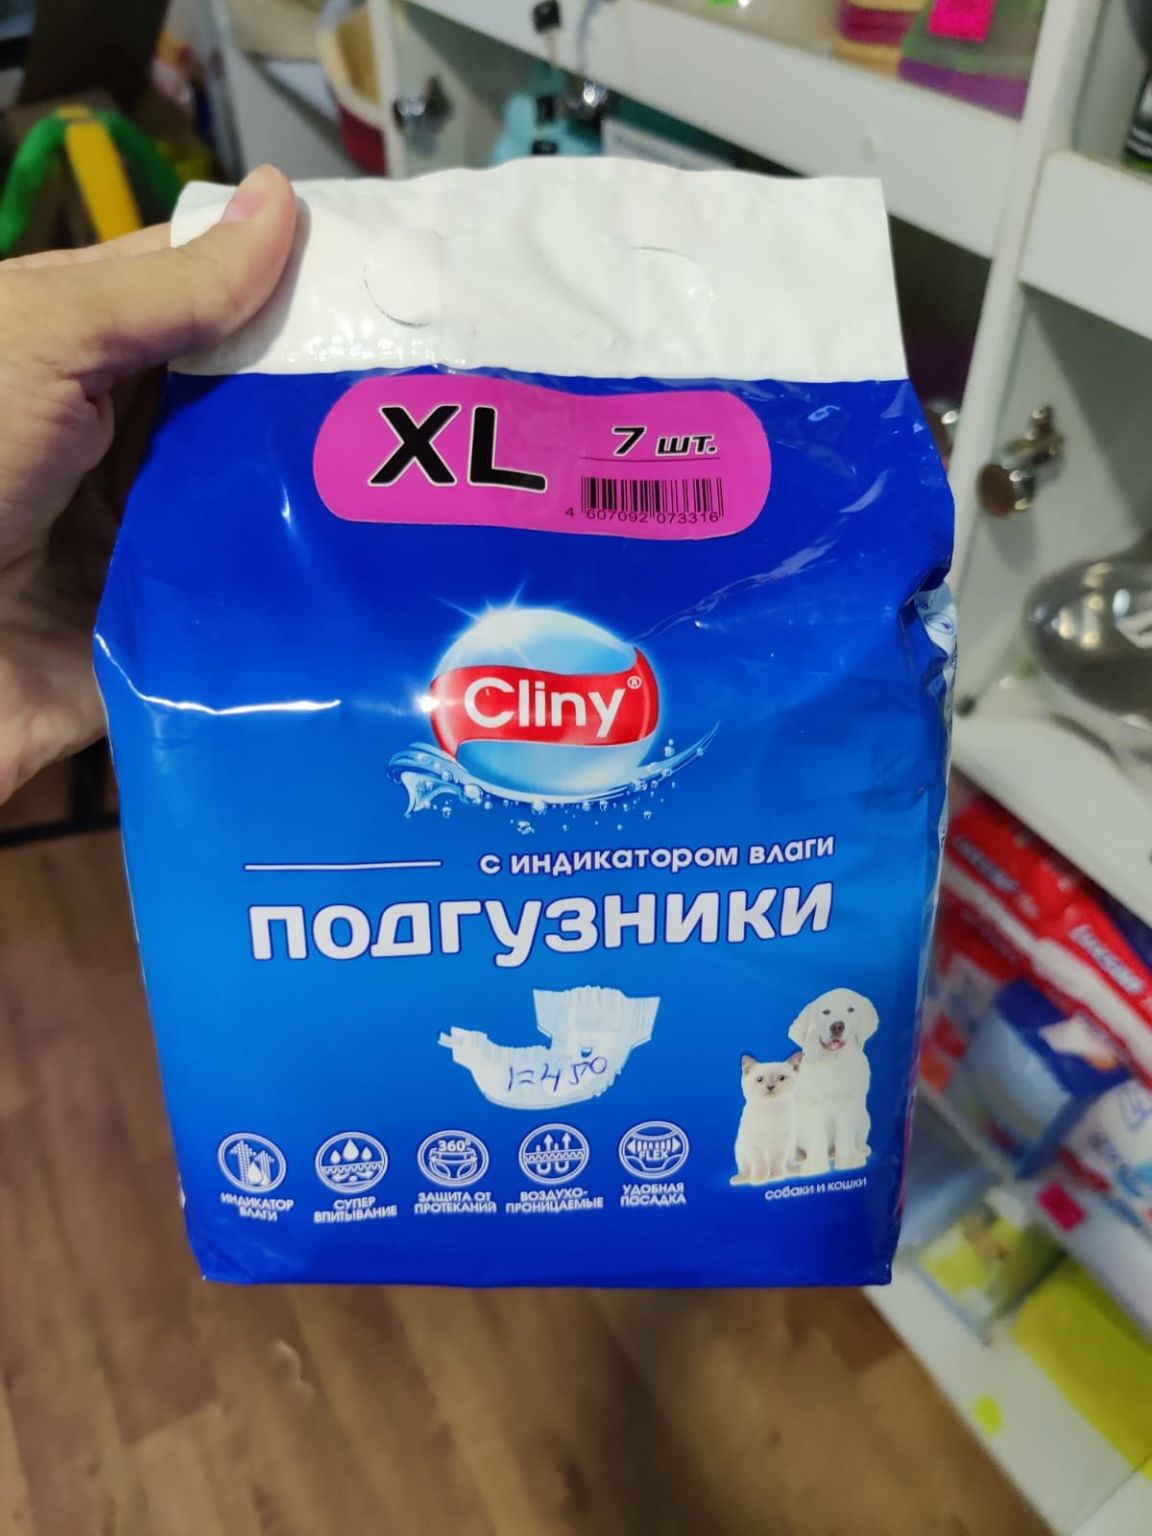 Cliny XL